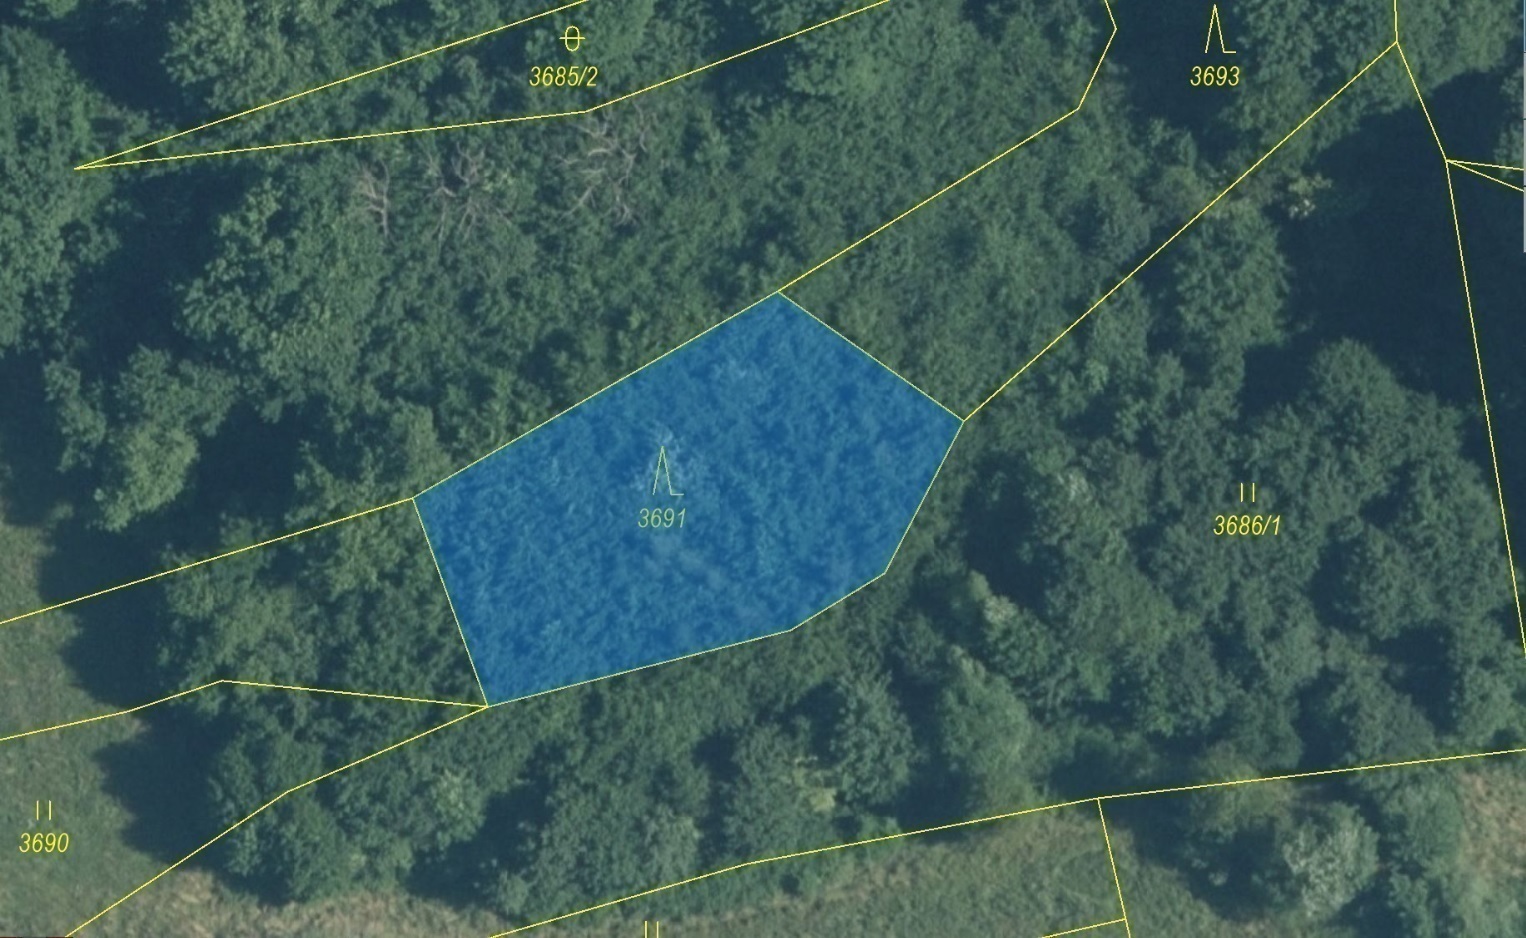 Lesní pozemek o výměře 938 m2, podíl 1/1, k.ú. Hovězí, okres Vsetín